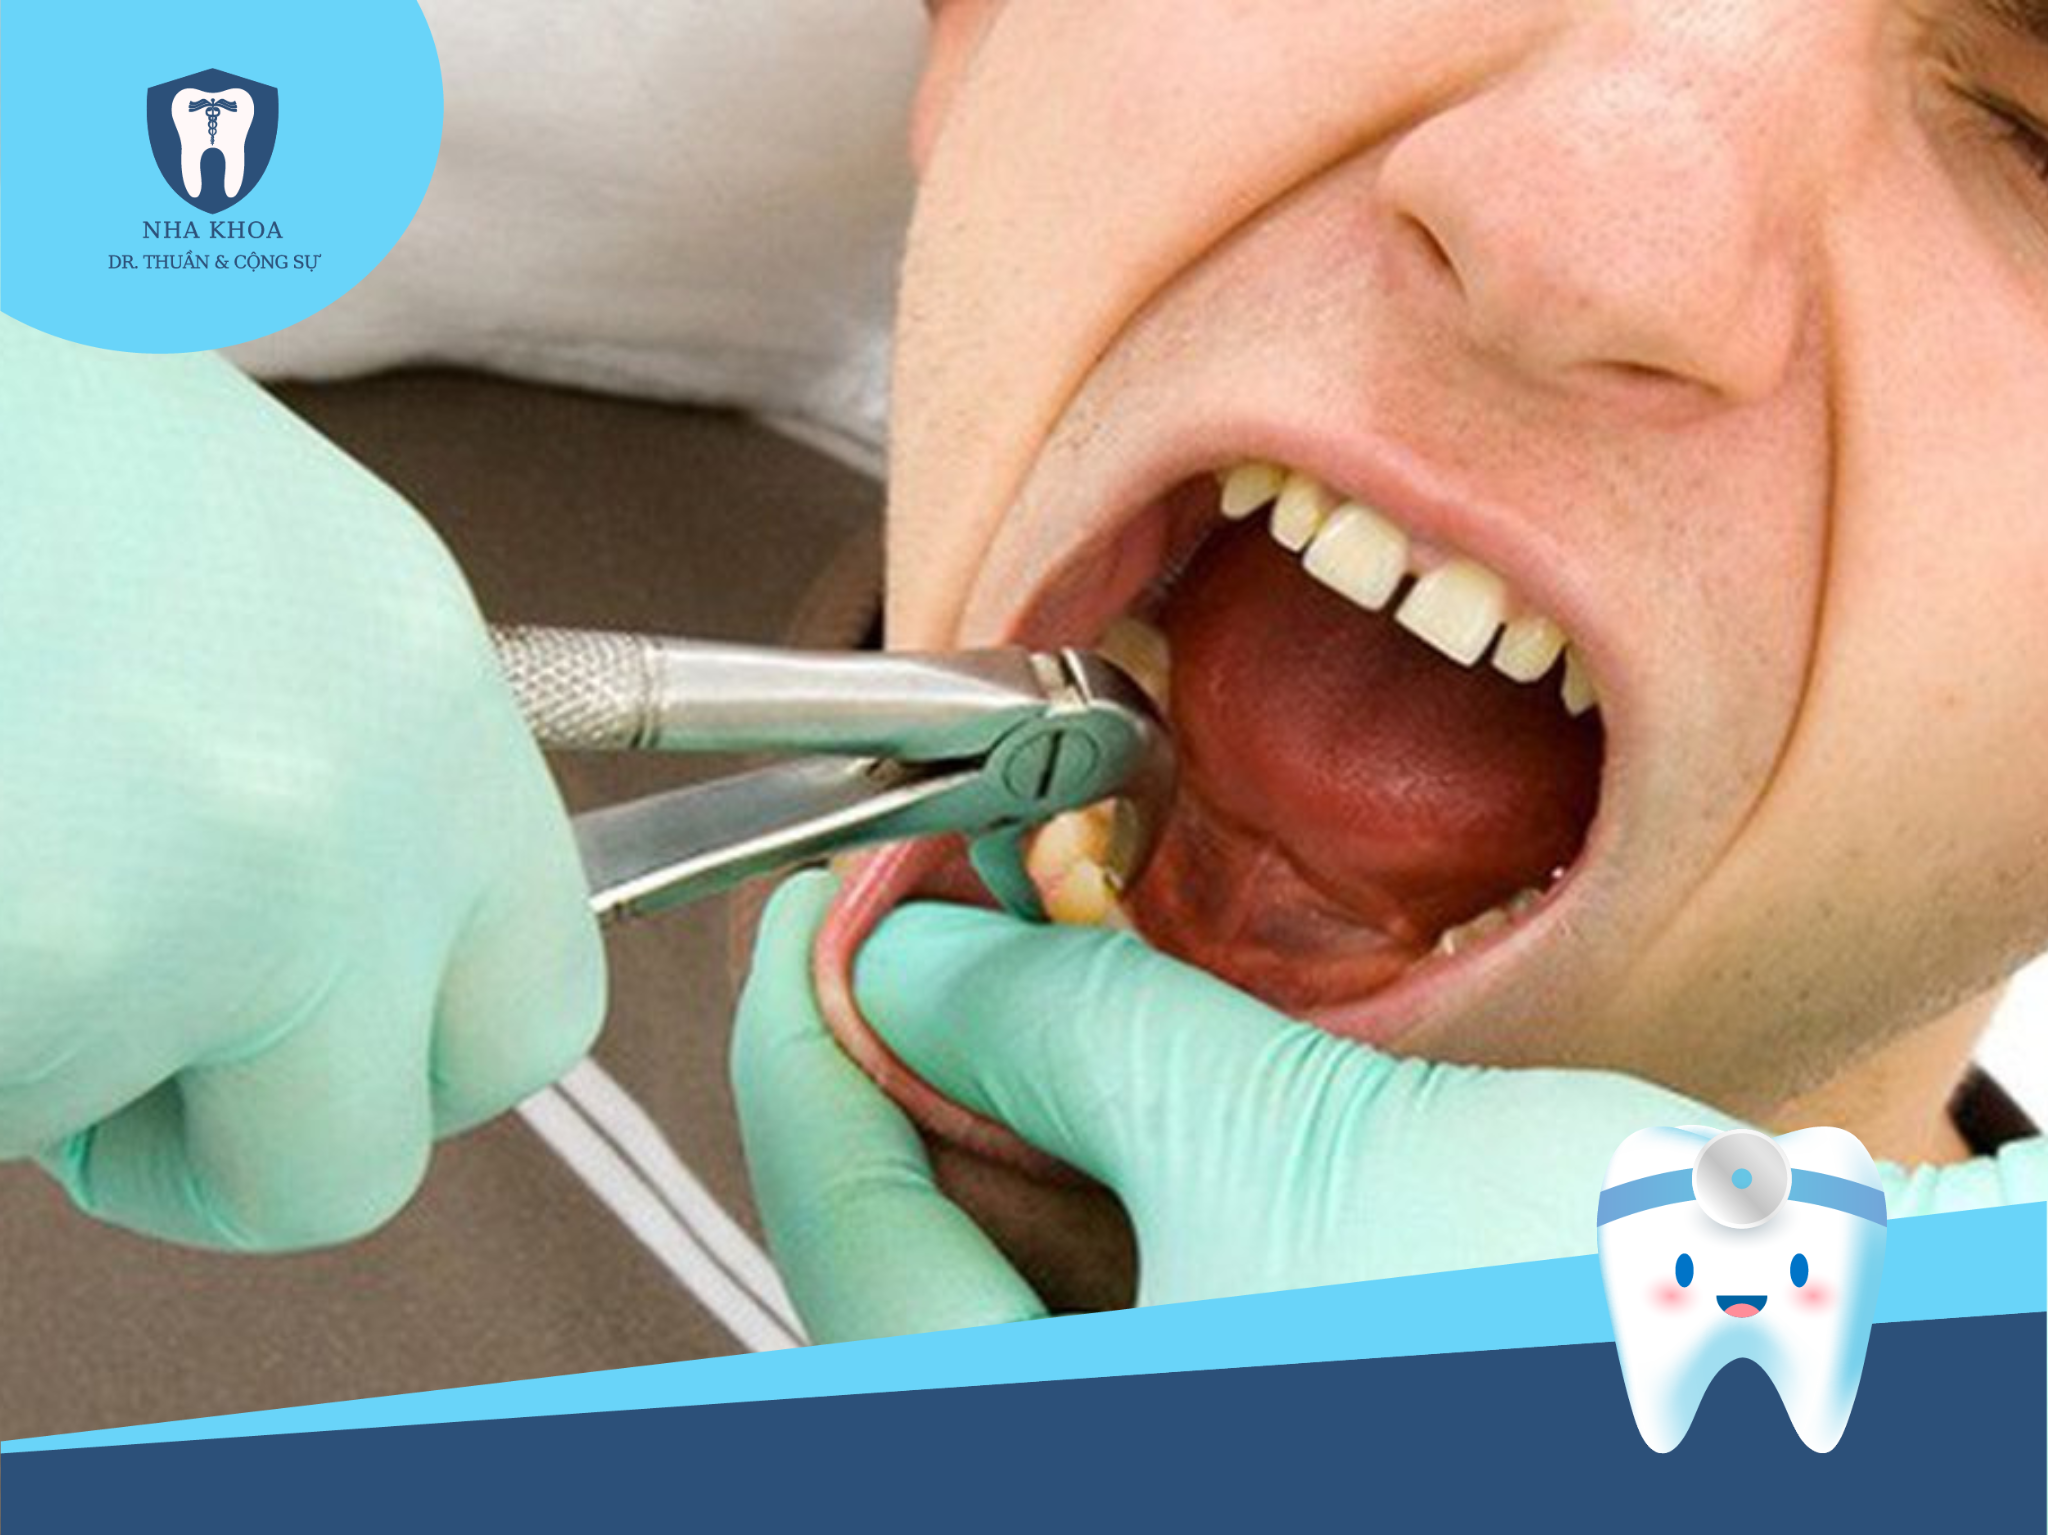 Những lưu ý này sẽ giúp giảm nguy cơ biến chứng và giữ cho quá trình phục hồi sau khi nhổ răng khôn diễn ra thuận lợi.